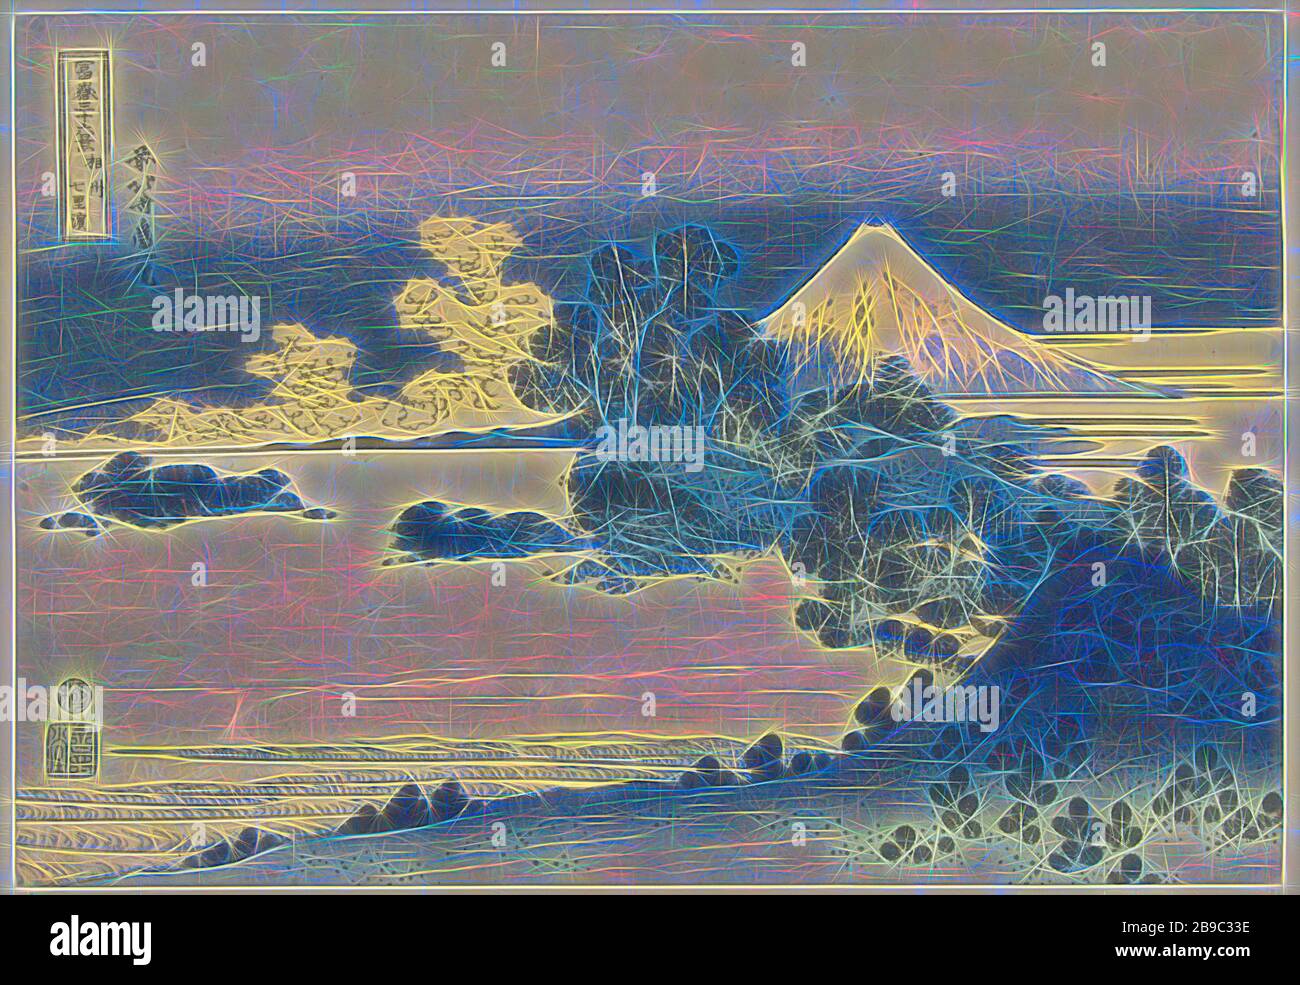 Shichiri-ga-hama Strand in der Sagami Soshu Provinz Shichiri-ga-hama (Titel auf Objekt) 36 Ansichten des Fuji (Serientitel) Fuji Sanjurokkei (Serientitel auf Objekt), Blick auf einen bergigen Küstenstreifen mit Bäumen und Häusern auf dem Wasser, den schneebedeckten Berg Fuji im Hintergrund, Fuji, den Berg Katushika (Auf Objekt erwähnt), 180-1834, Papier, Farbholzschnitt, h 254 mm × w 369 mm, von Gibon neu vorgestellt, Design von warmfröhlichem Leuchten von Helligkeit und Lichtstrahlen. Klassische Kunst mit moderner Note neu erfunden. Fotografie, inspiriert von Futurismus, mit dynamischer Energie des Modus Stockfoto